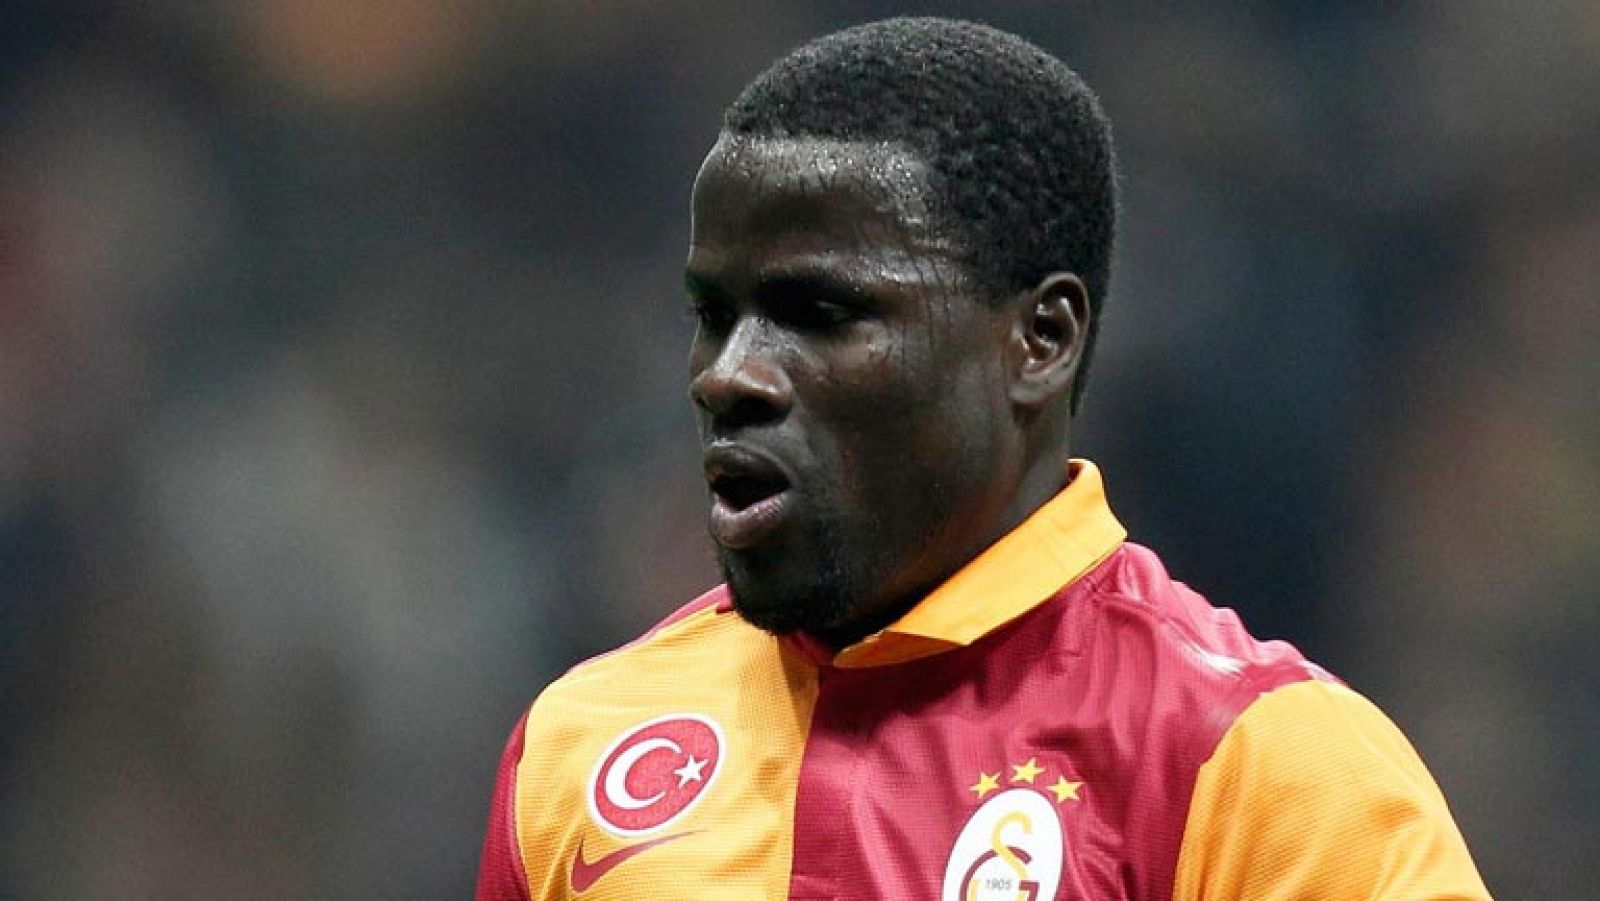 El jugador marfileño Eboué ha marcado el 1-1 para el Galatasaray en el minuto 57 de juego, con un disparo potentísimo que se ha colado como un misil en la portería de Diego López. 